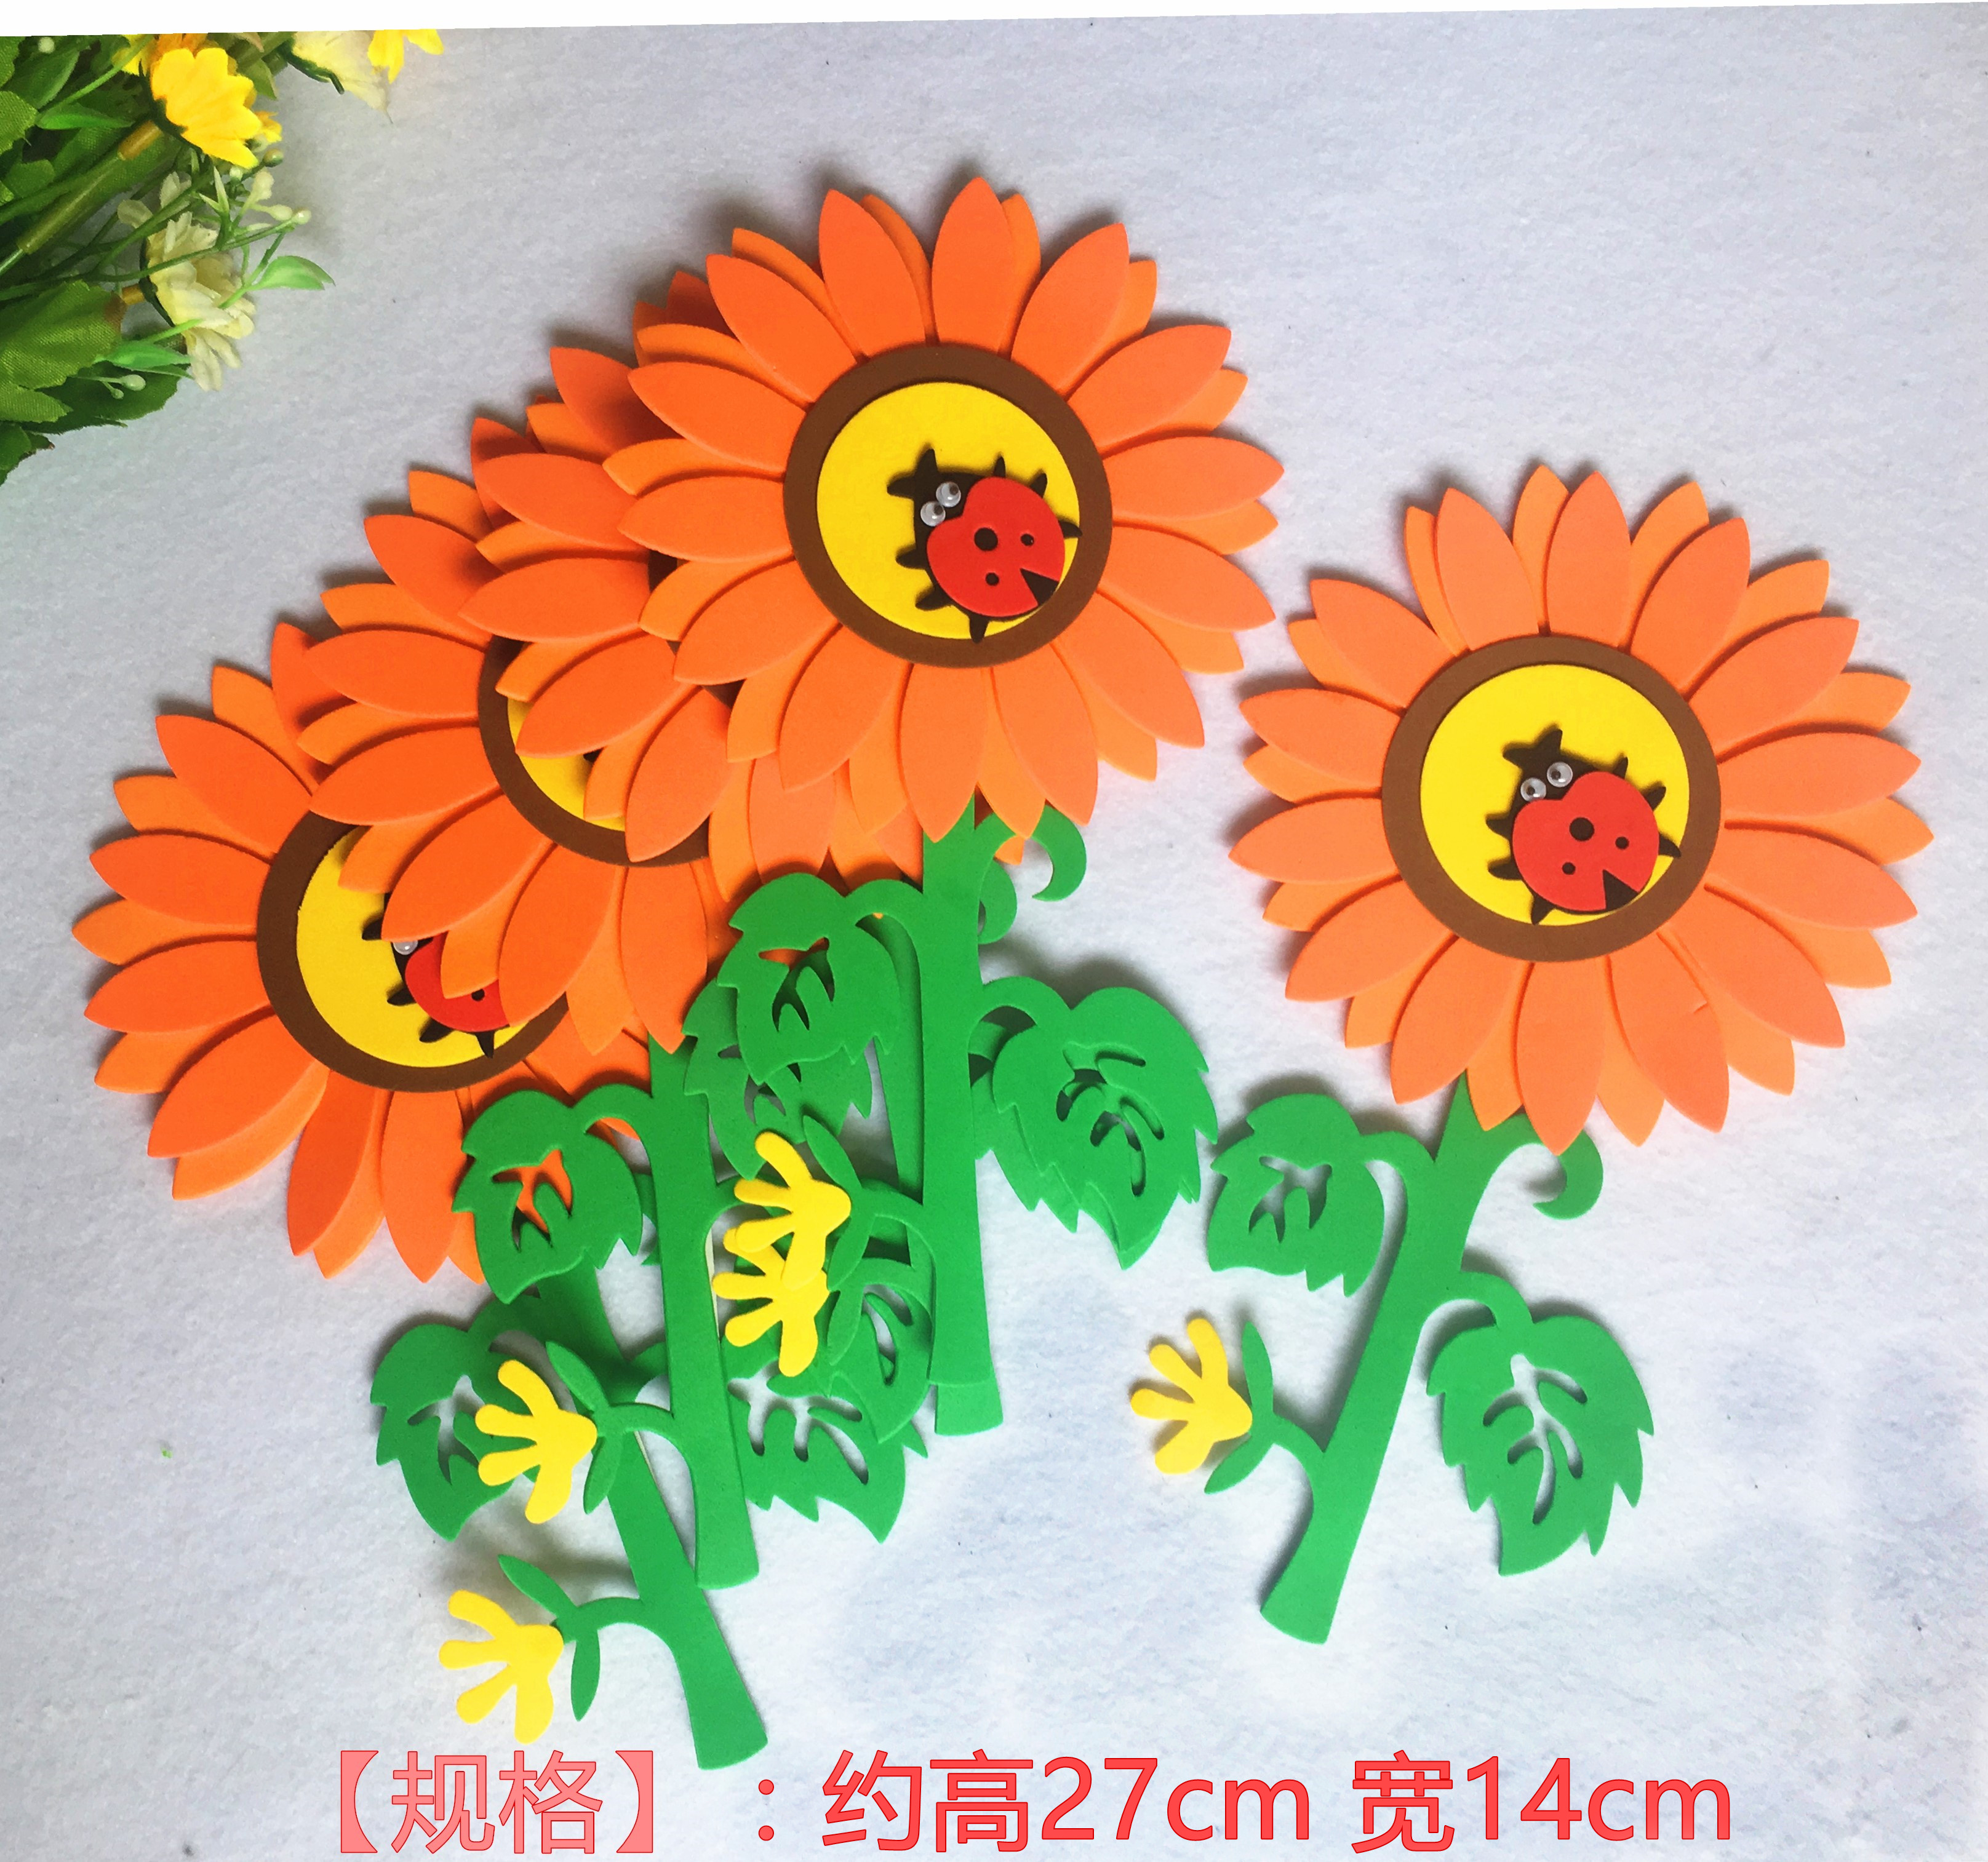 幼儿园教室装饰品墙贴泡沫壁纸贴向日葵太阳花甲虫七星瓢虫布置